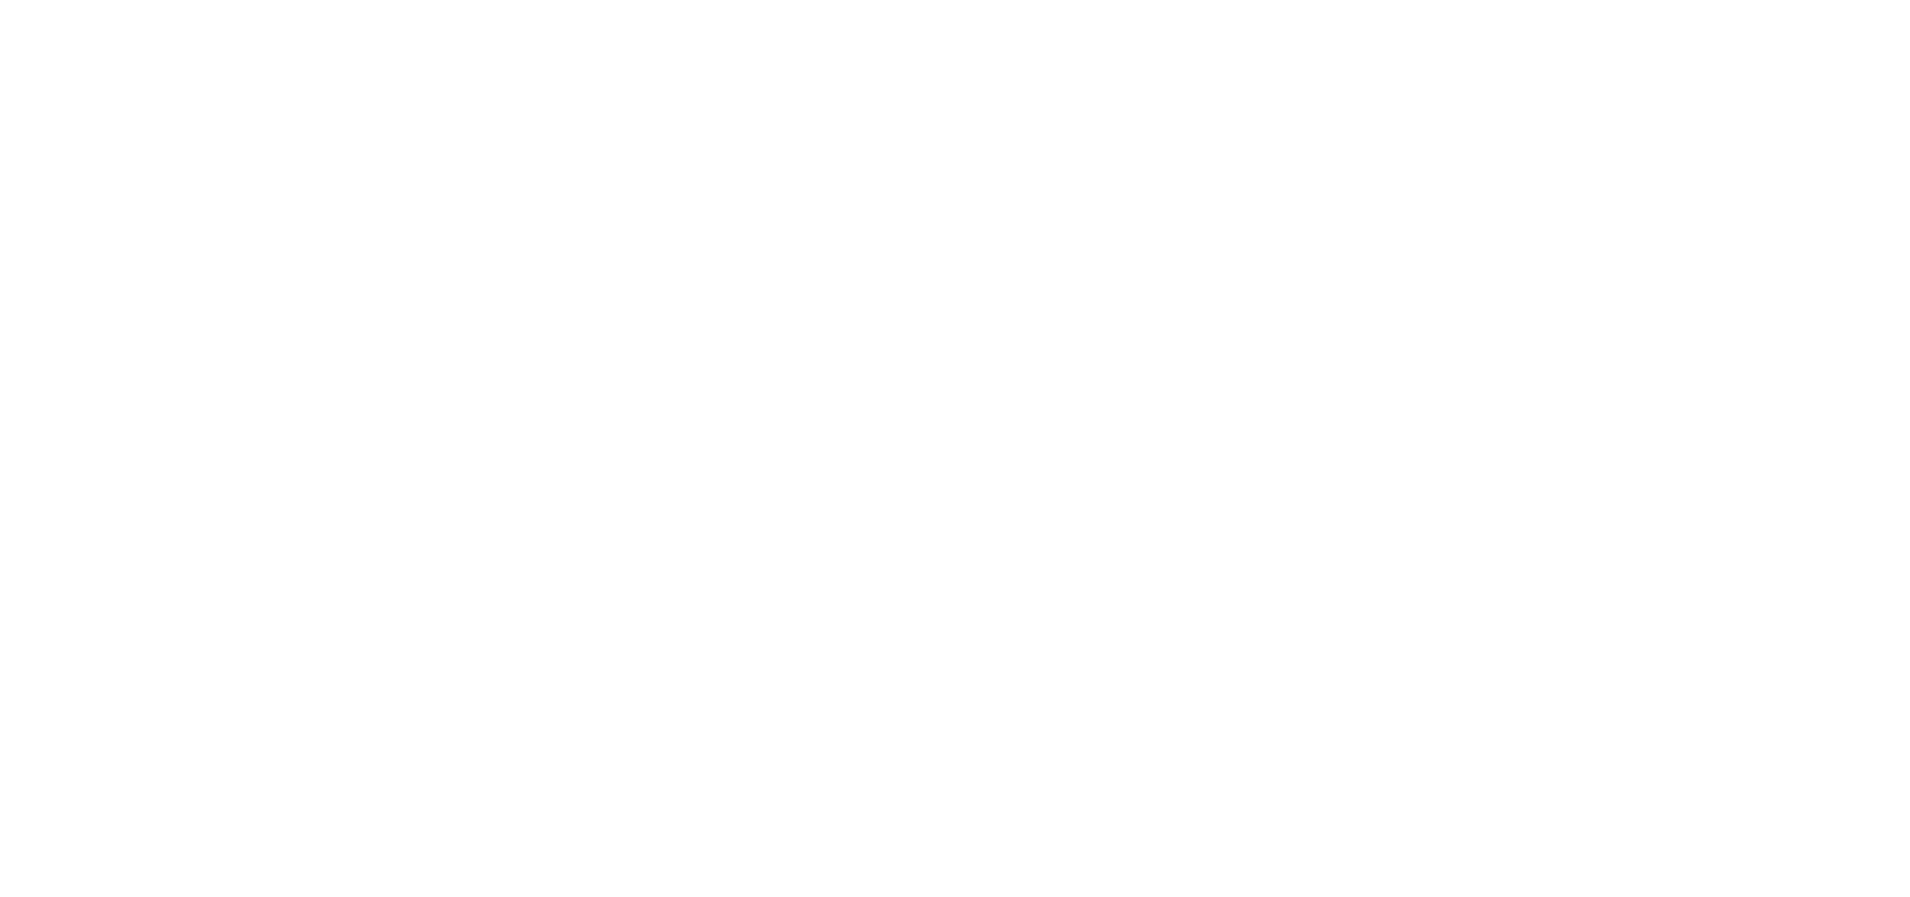 Energy-Ireland-Master-2016